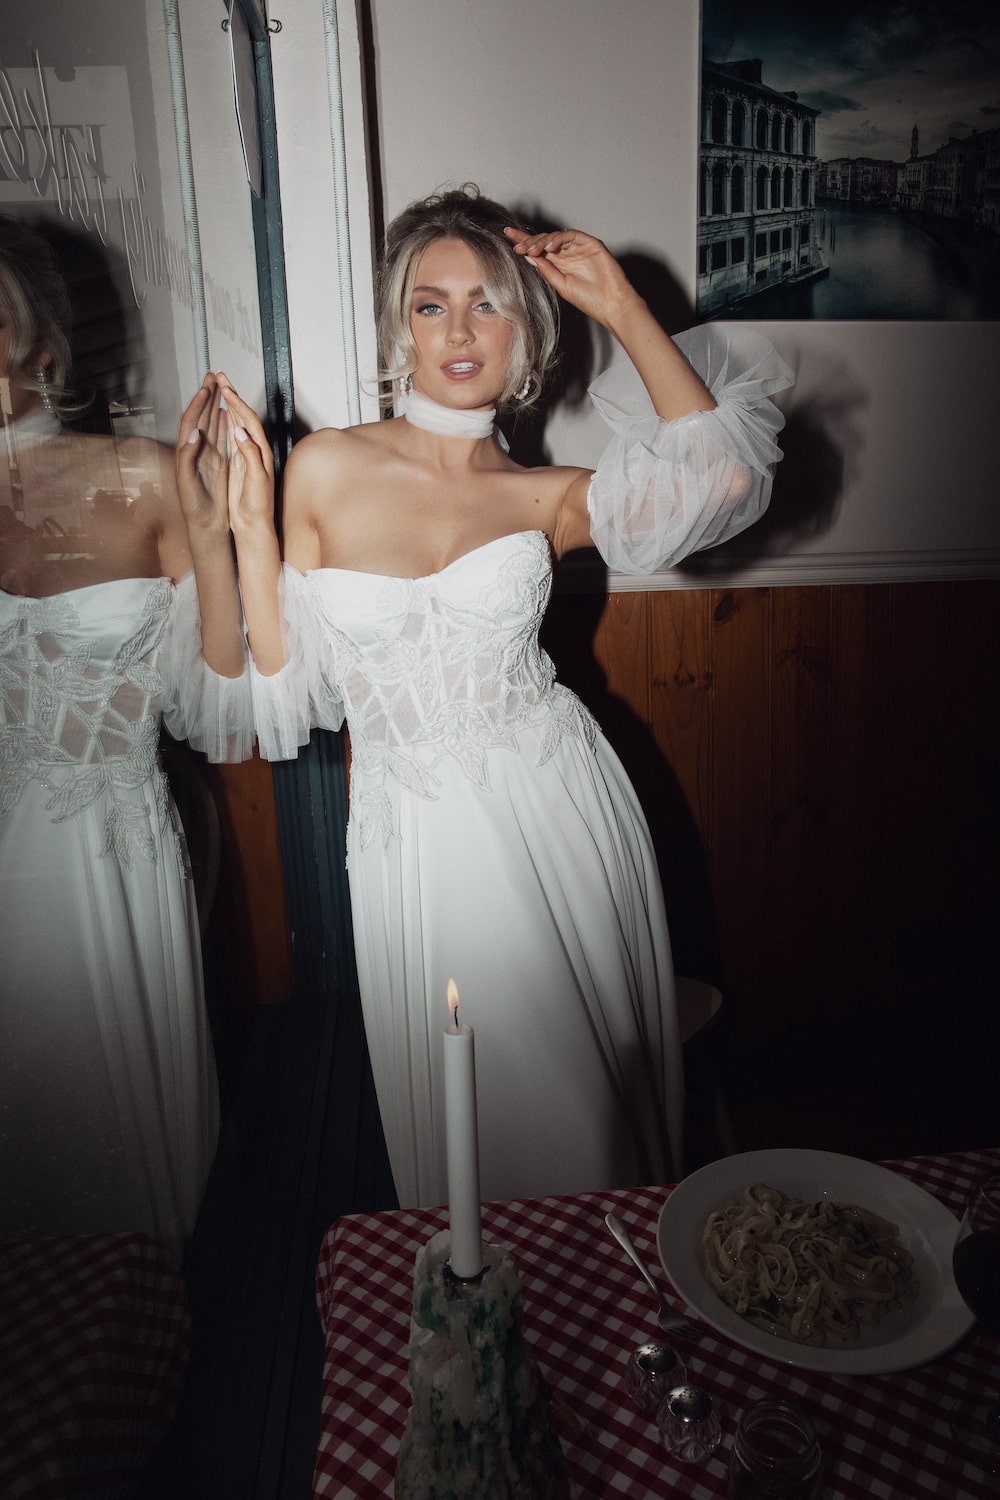 model posing by window in Italian cafe wearing the Giulietta gown.